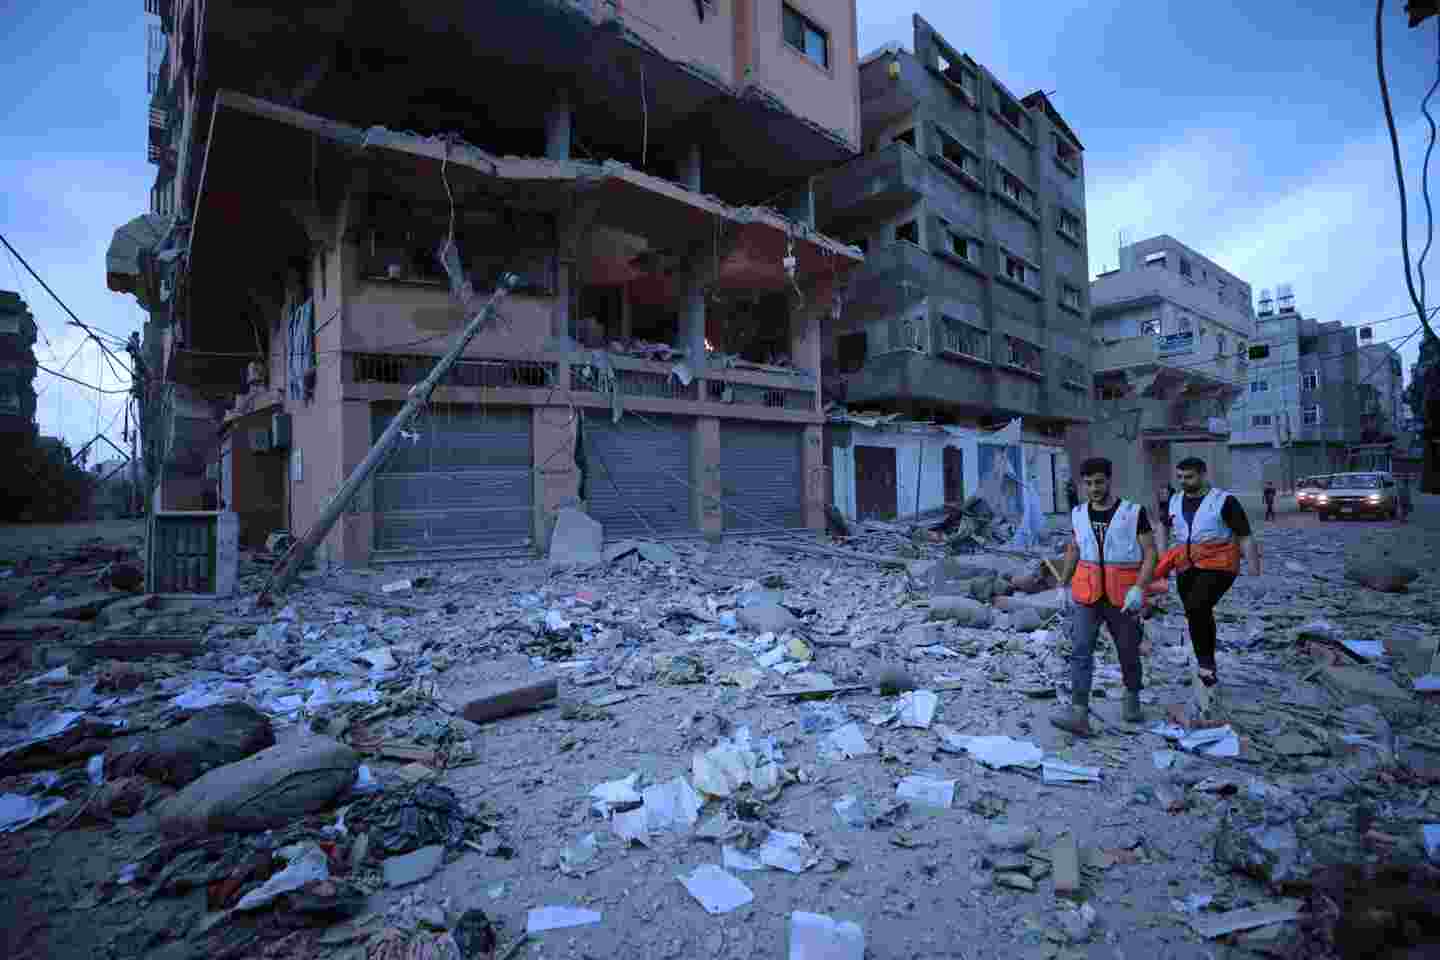 Palestiinan Punaisen Puolikuun vapaaehtoisia tekemässä avustustyötä raunioituneiden rakennusten keskellä.